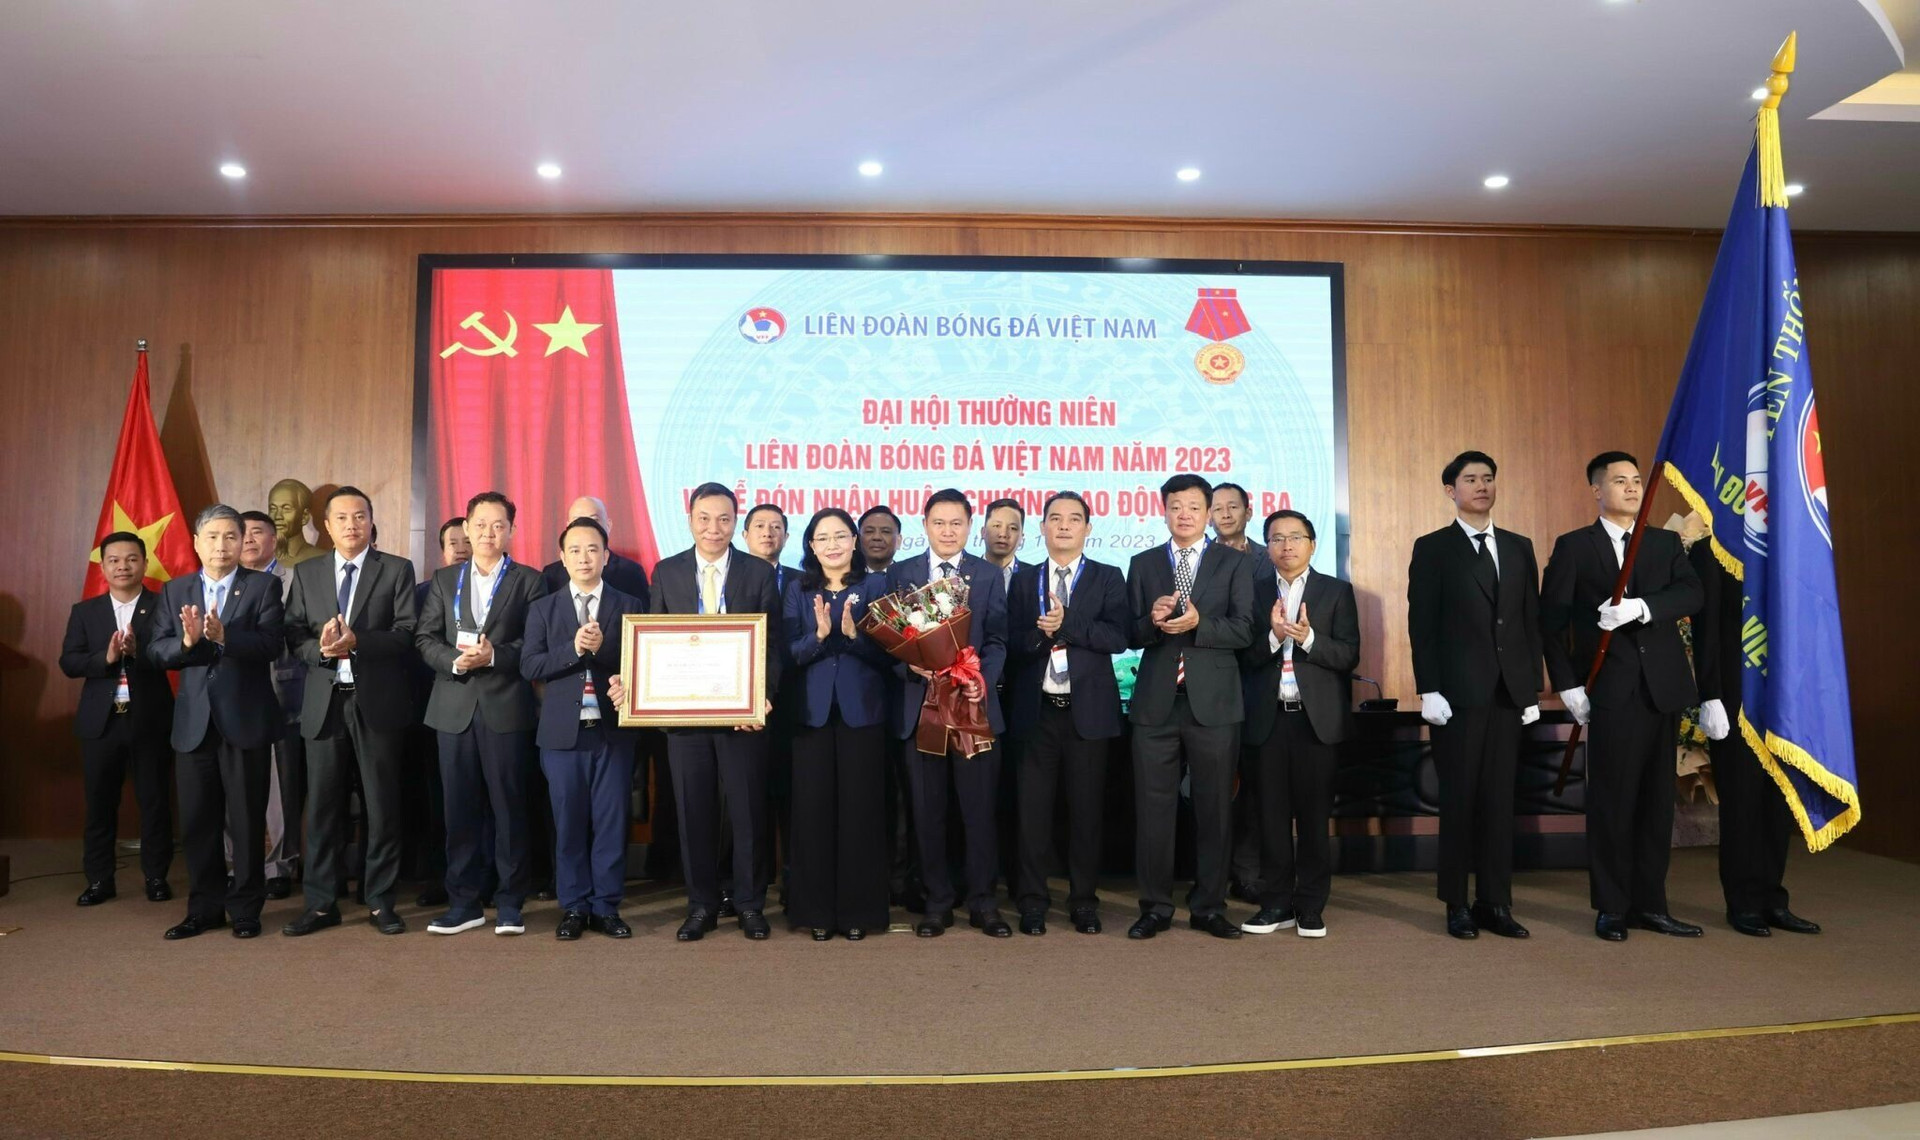 Liên đoàn bóng đá Việt Nam được tặng thưởng Huân chương lao động hạng Ba.